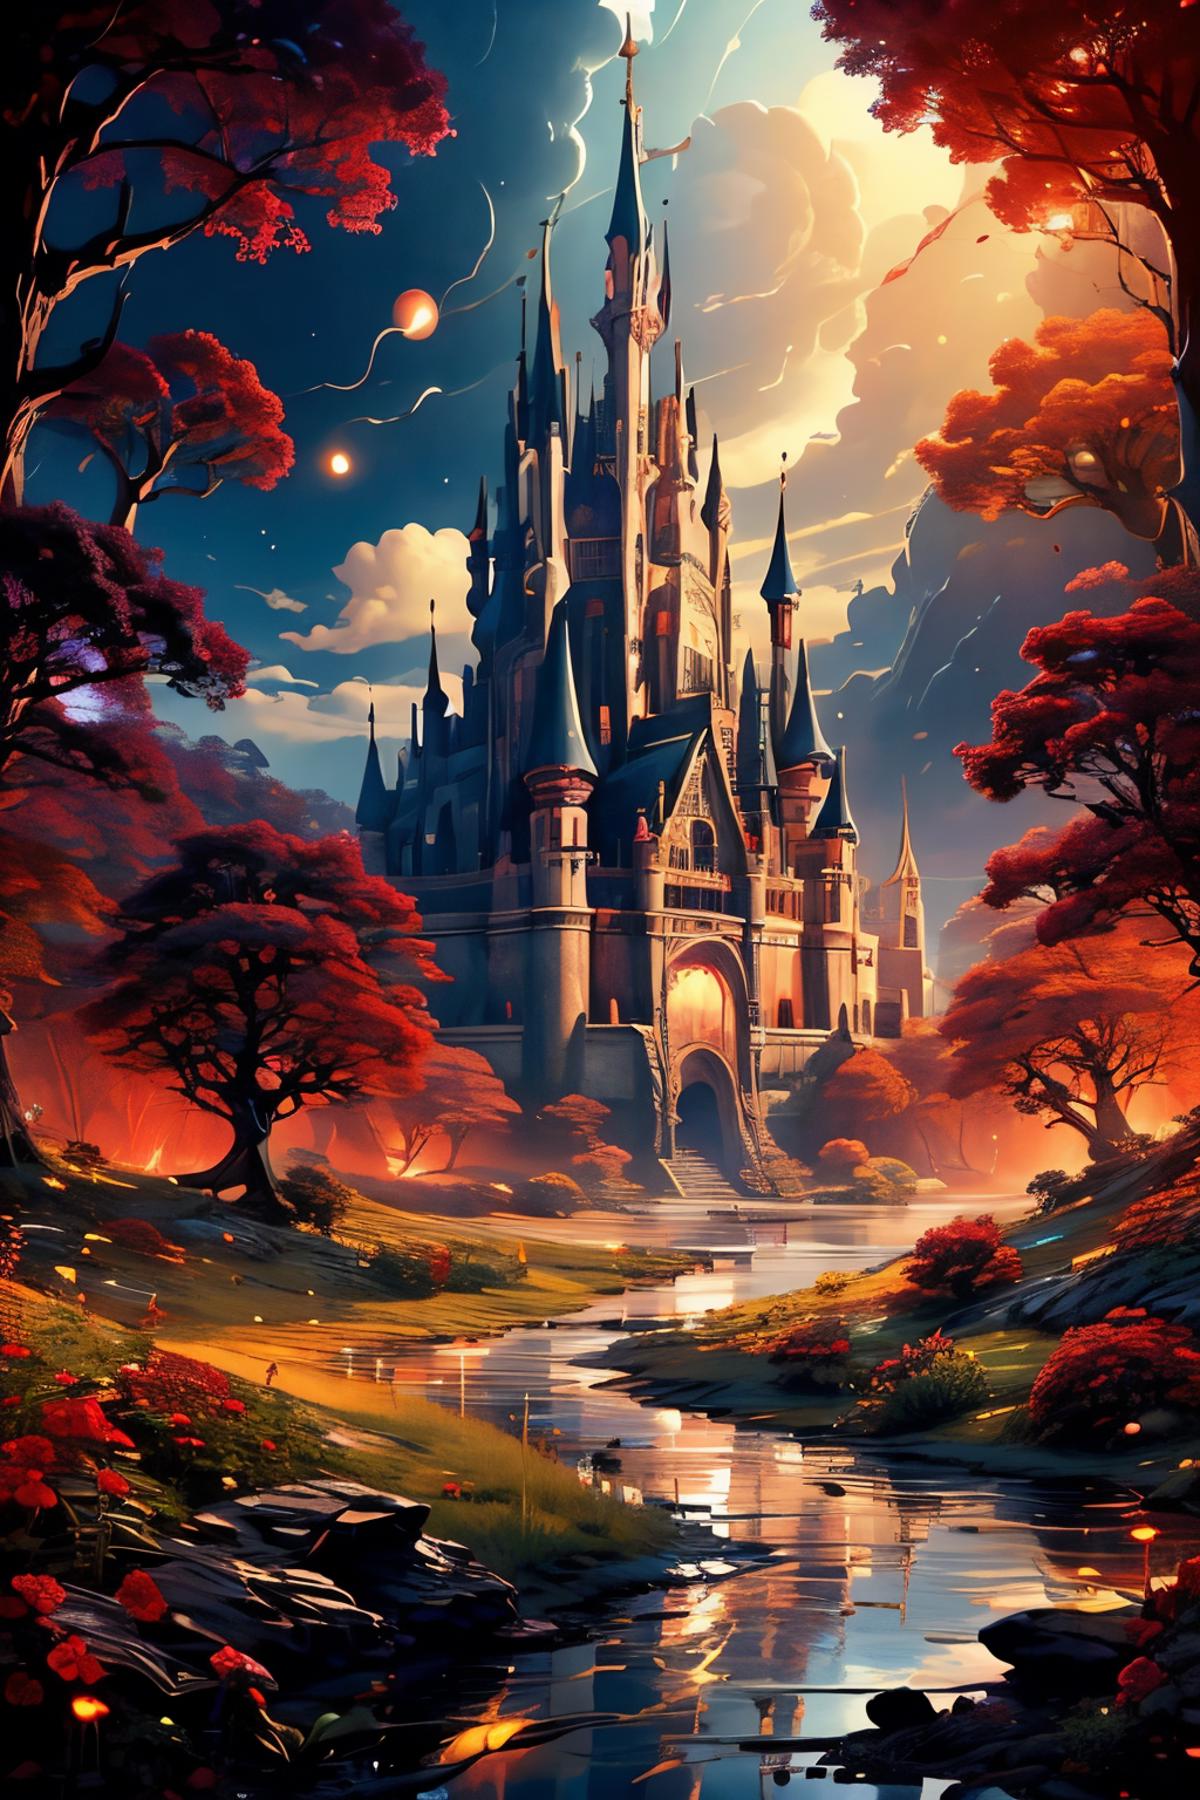 Edob Fairy Tale Landscape image by edobgames